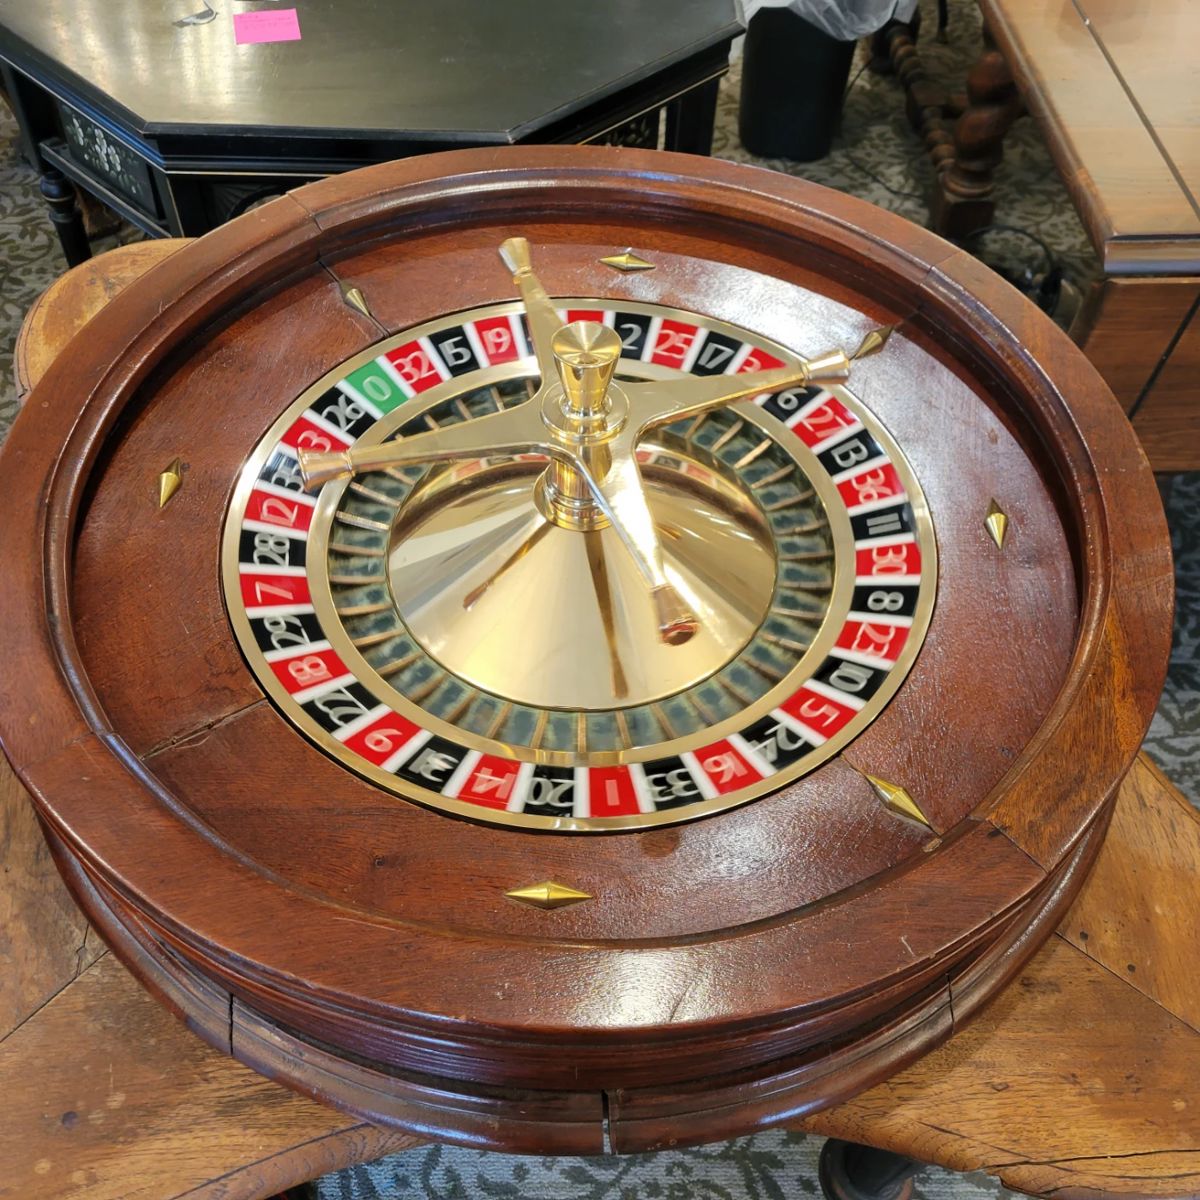 Vintage Roulette Wheel $3000